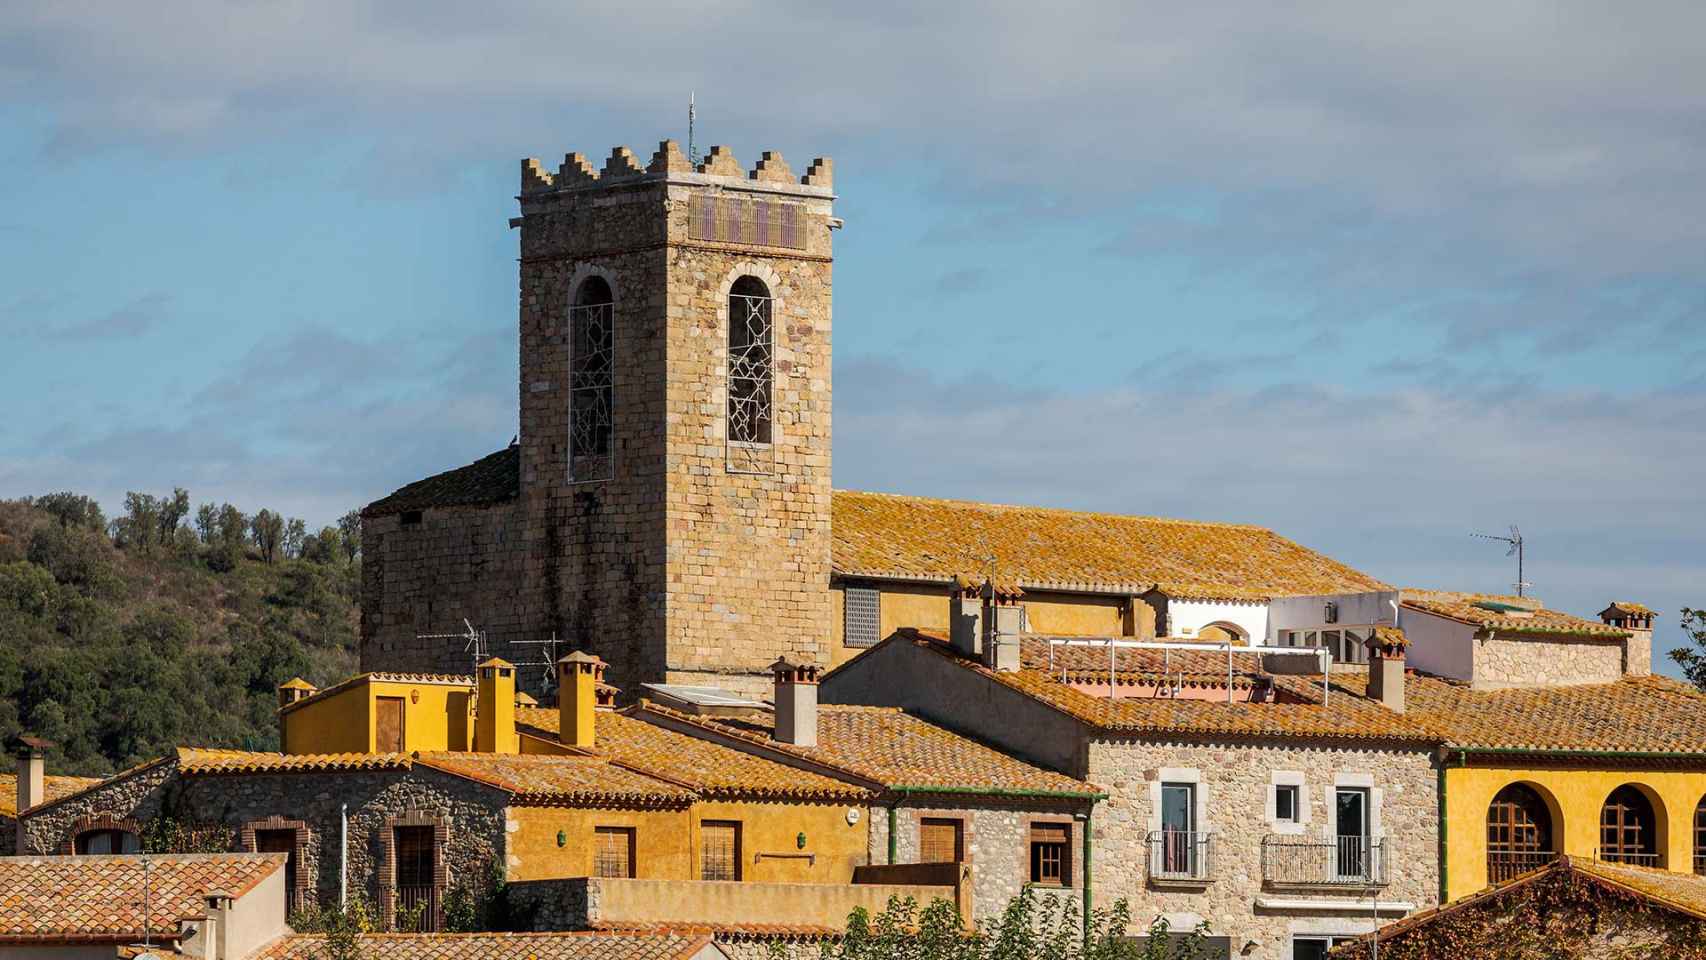 Santa María se encuentra en el centro del pueblo, en Girona